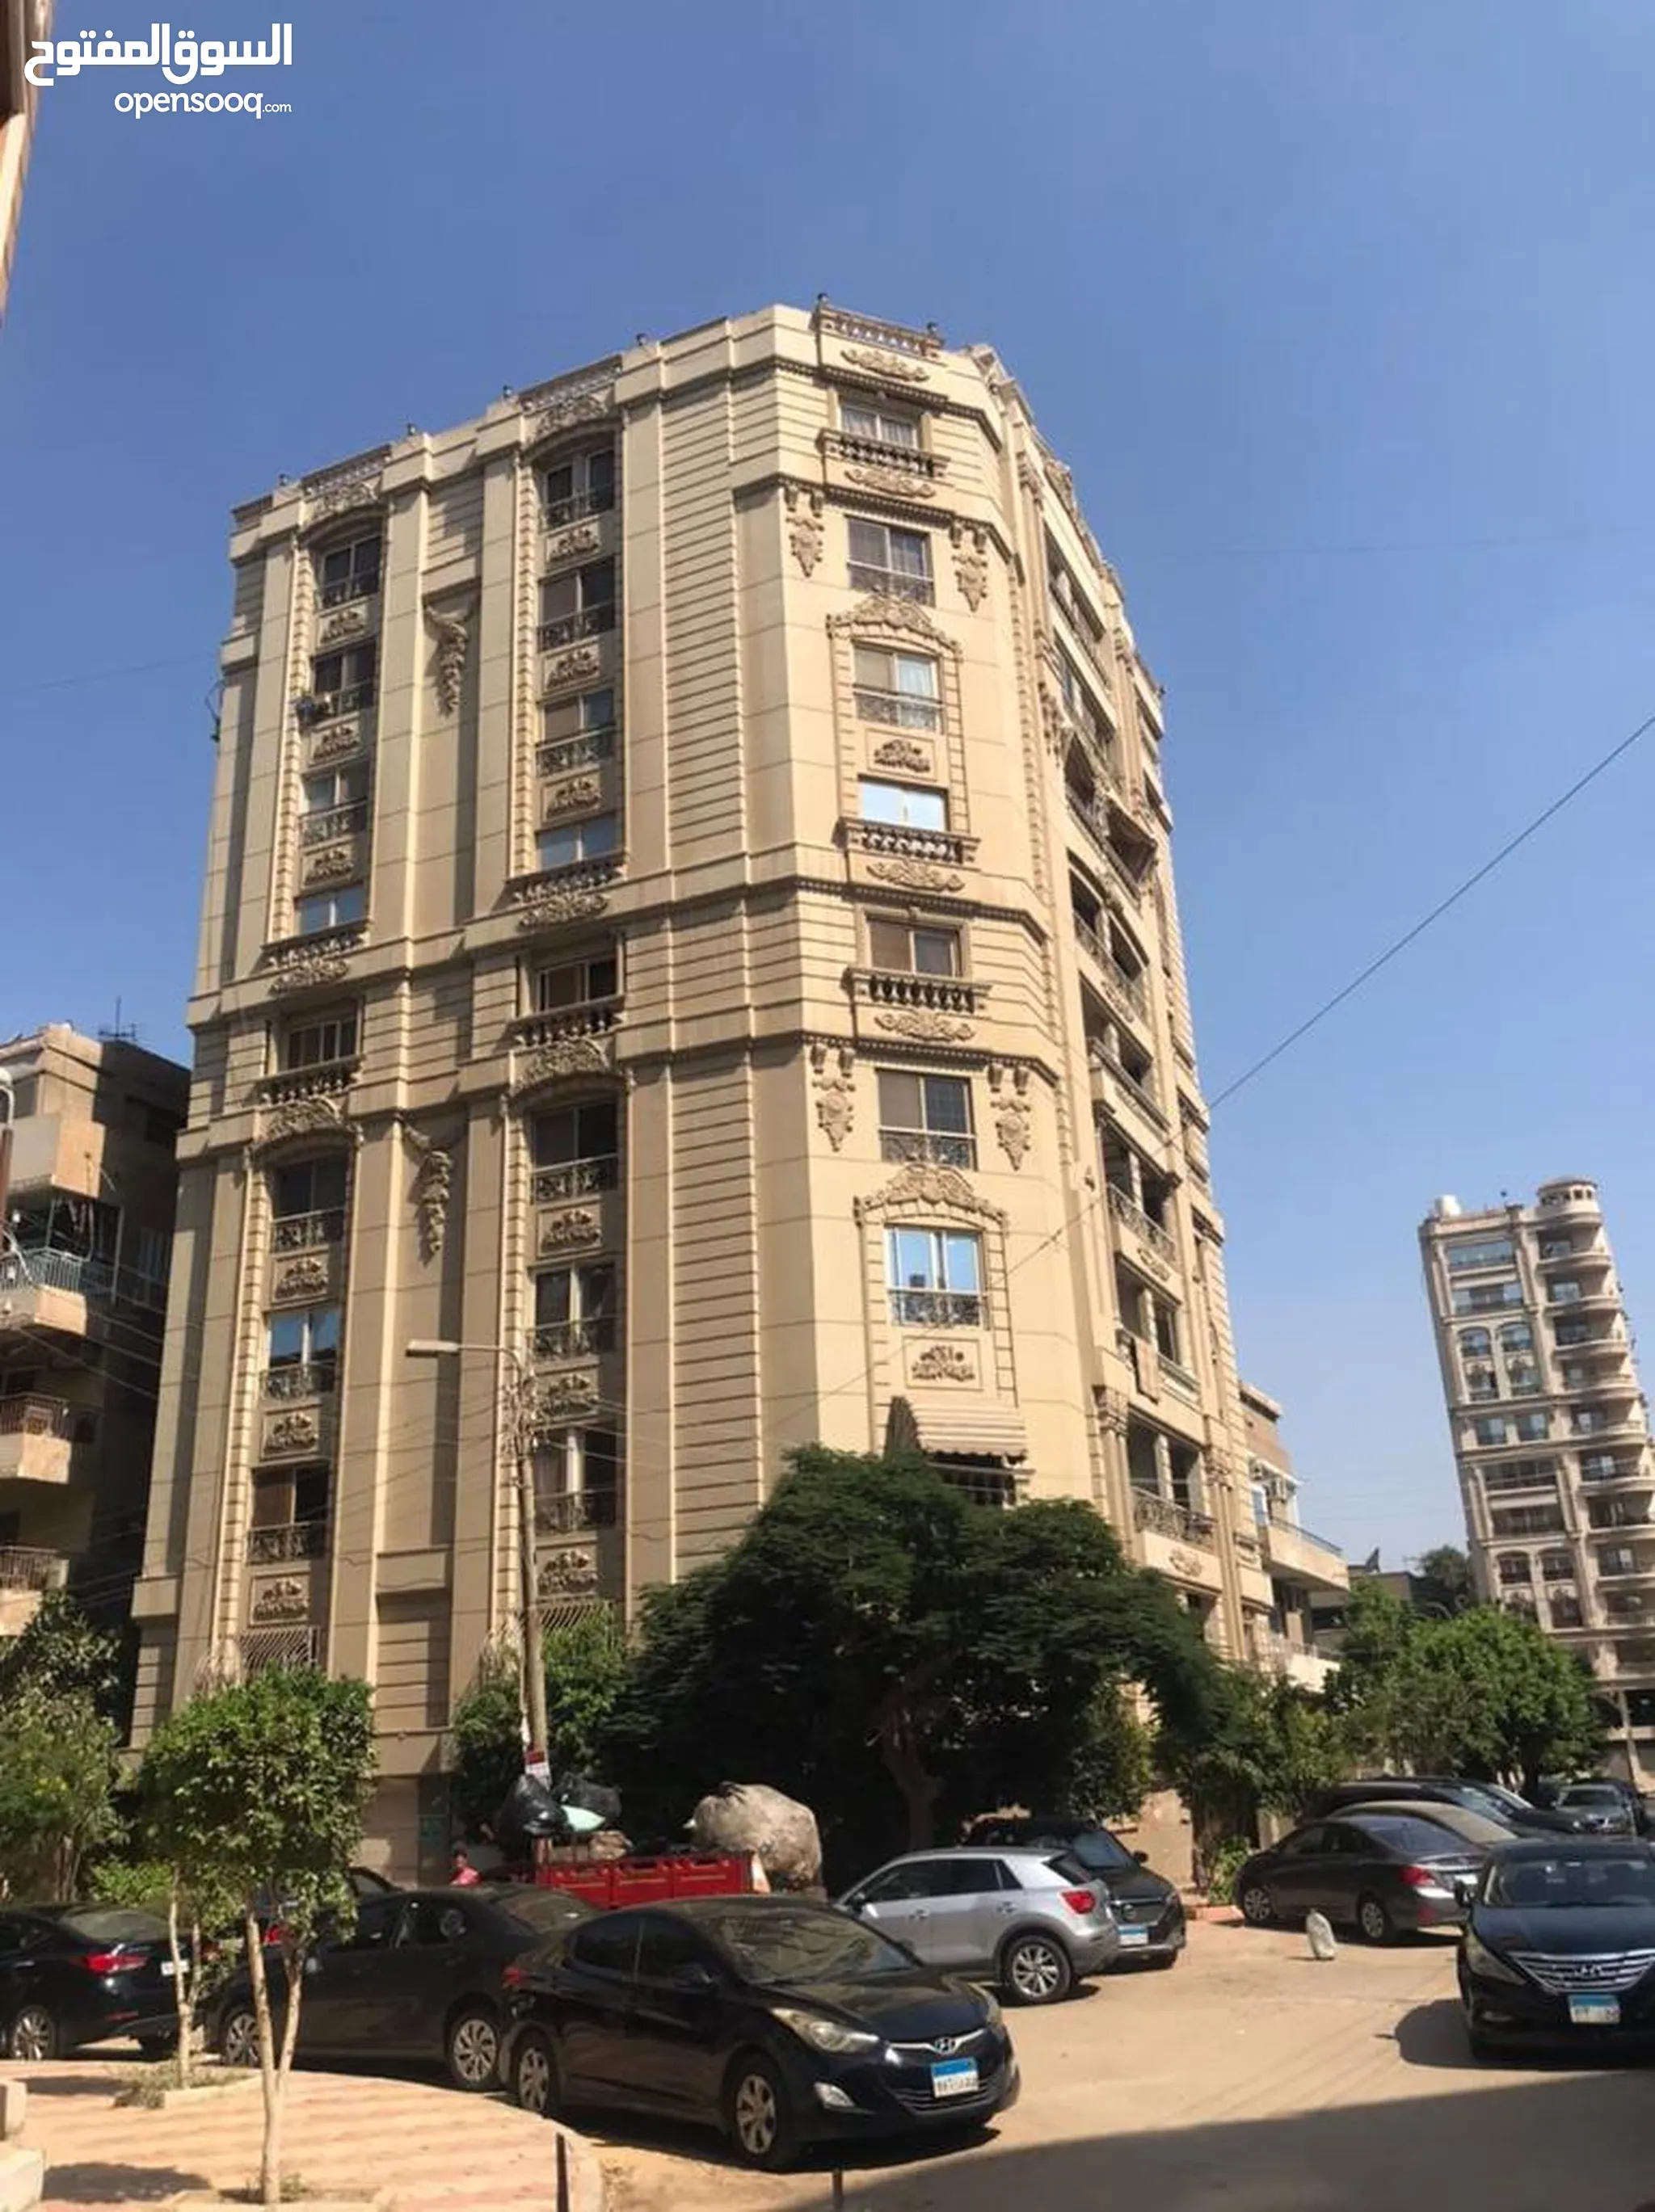 شقق للبيع 4 غرف نوم في مصر الجديدة القاهرة : السوق المفتوح